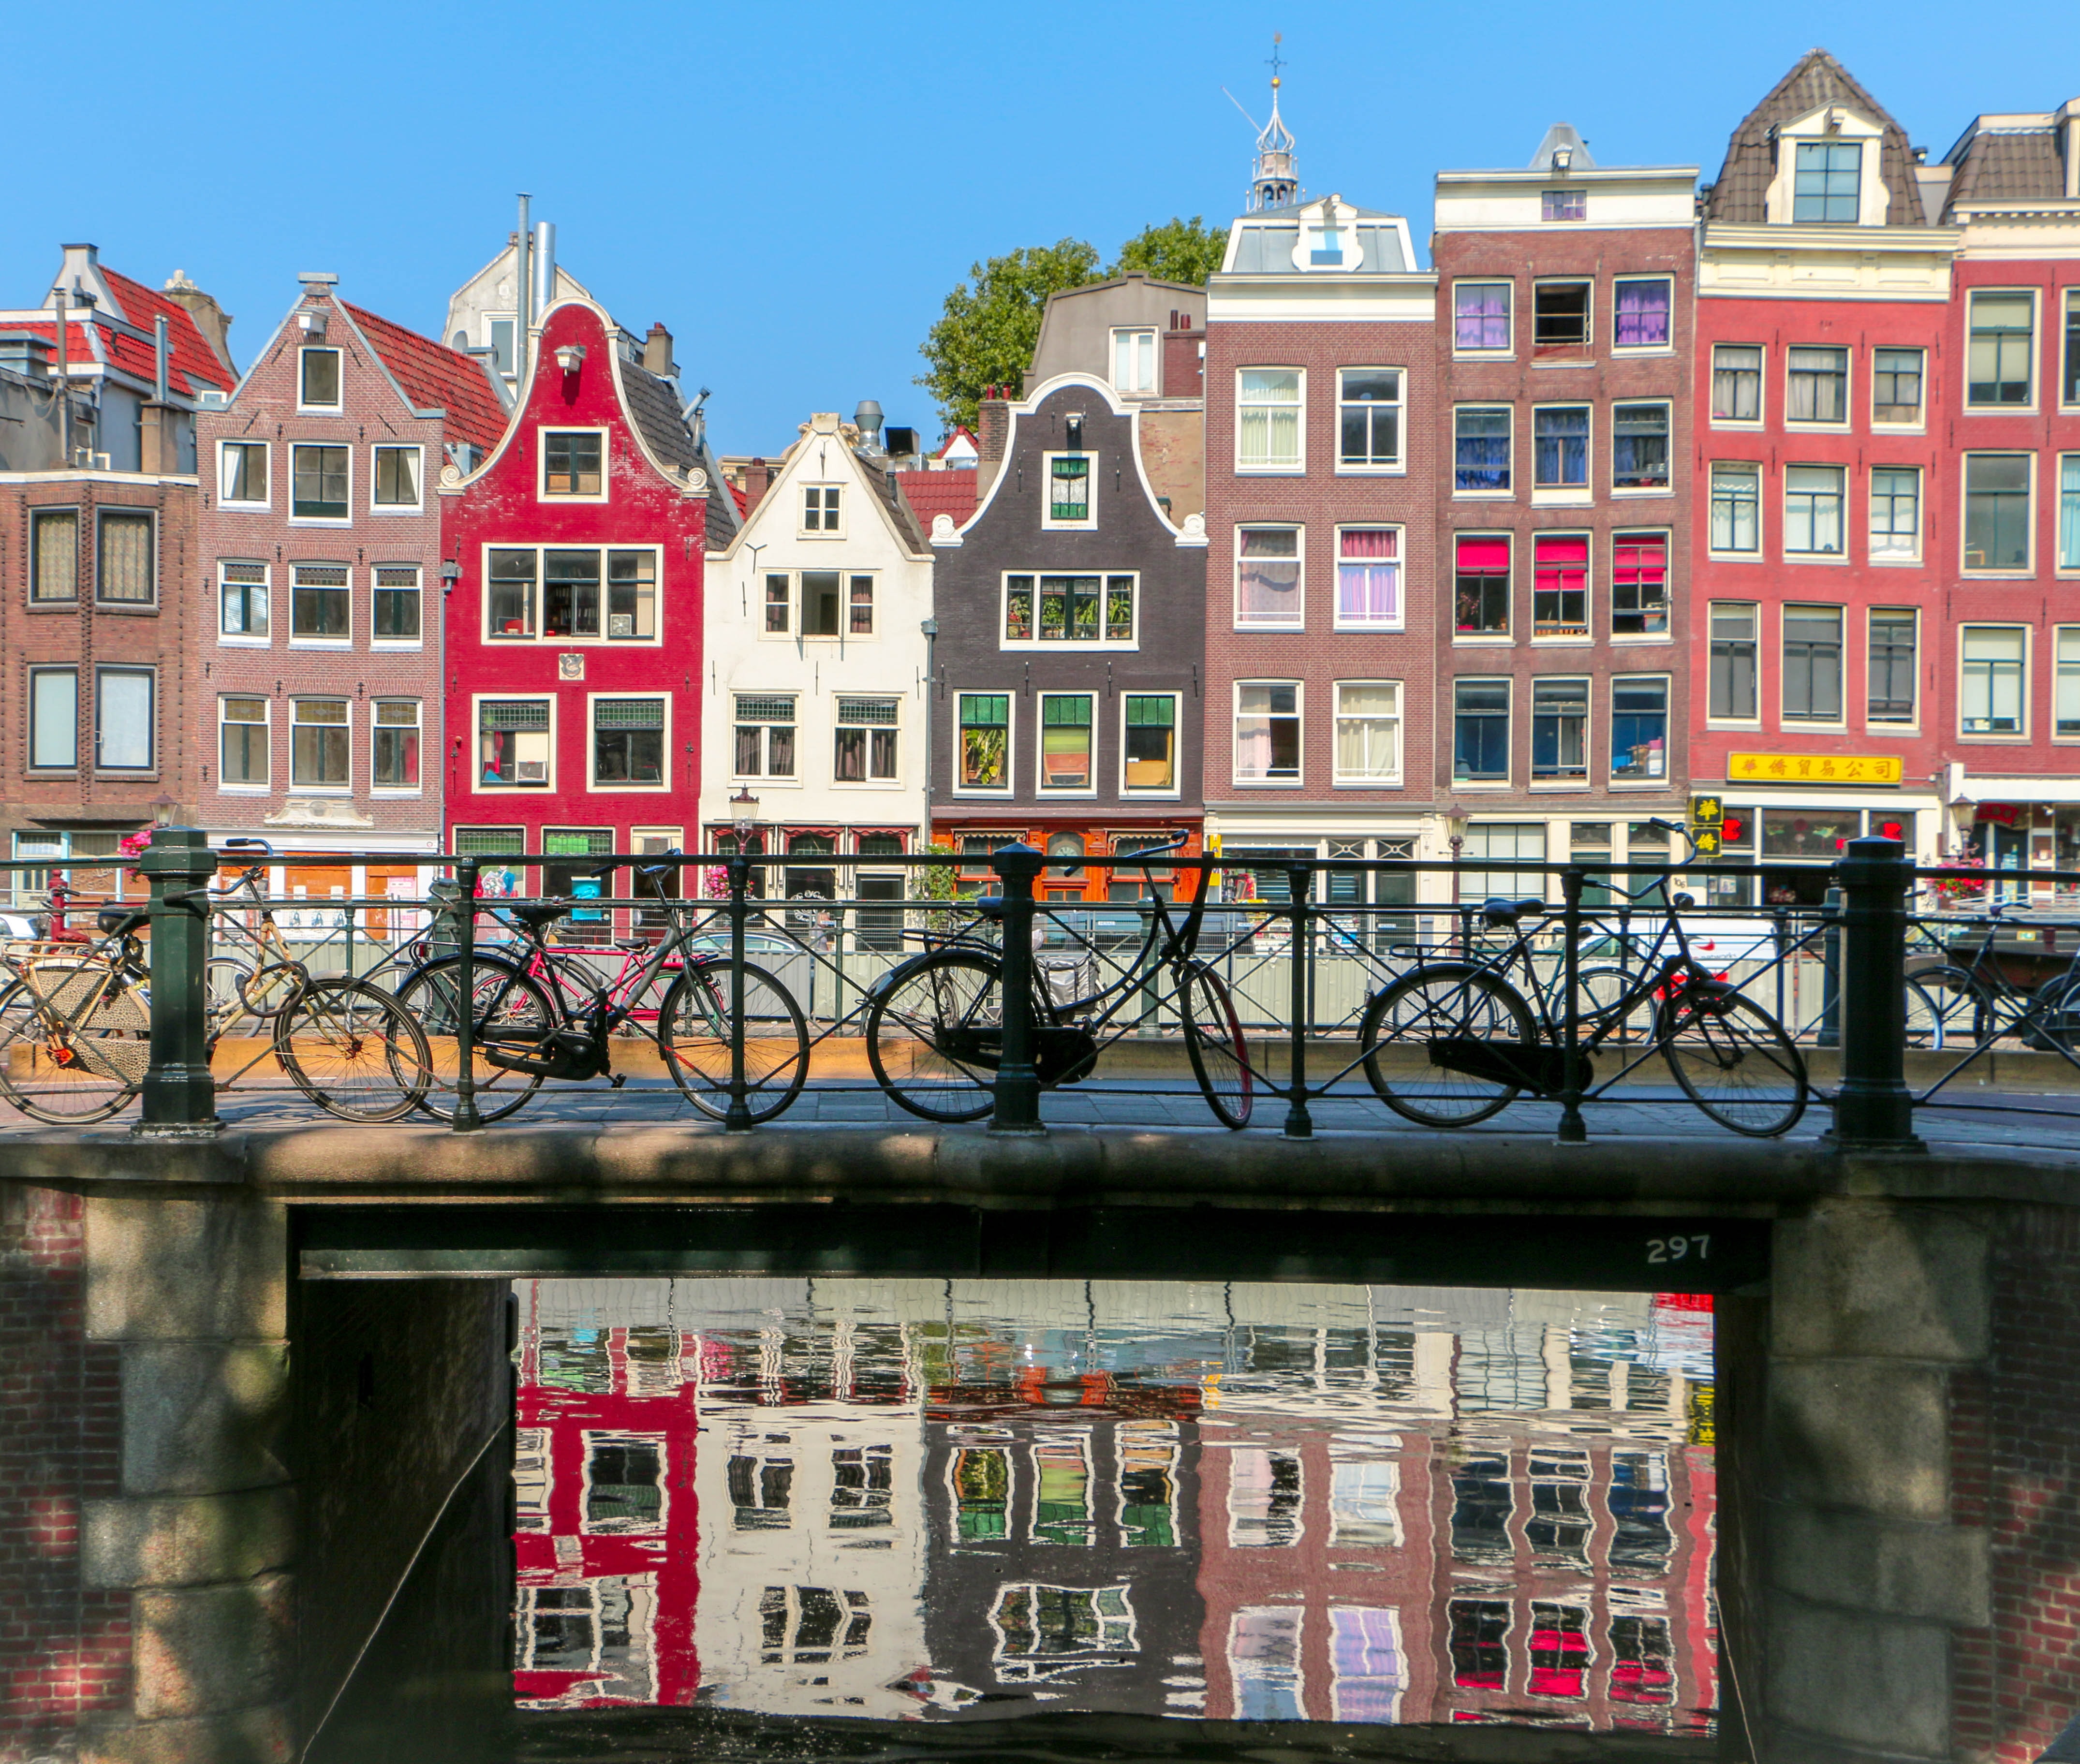 암스테르담 다리에 놓인 자전거들과 그 뒤로 보이는 건물들